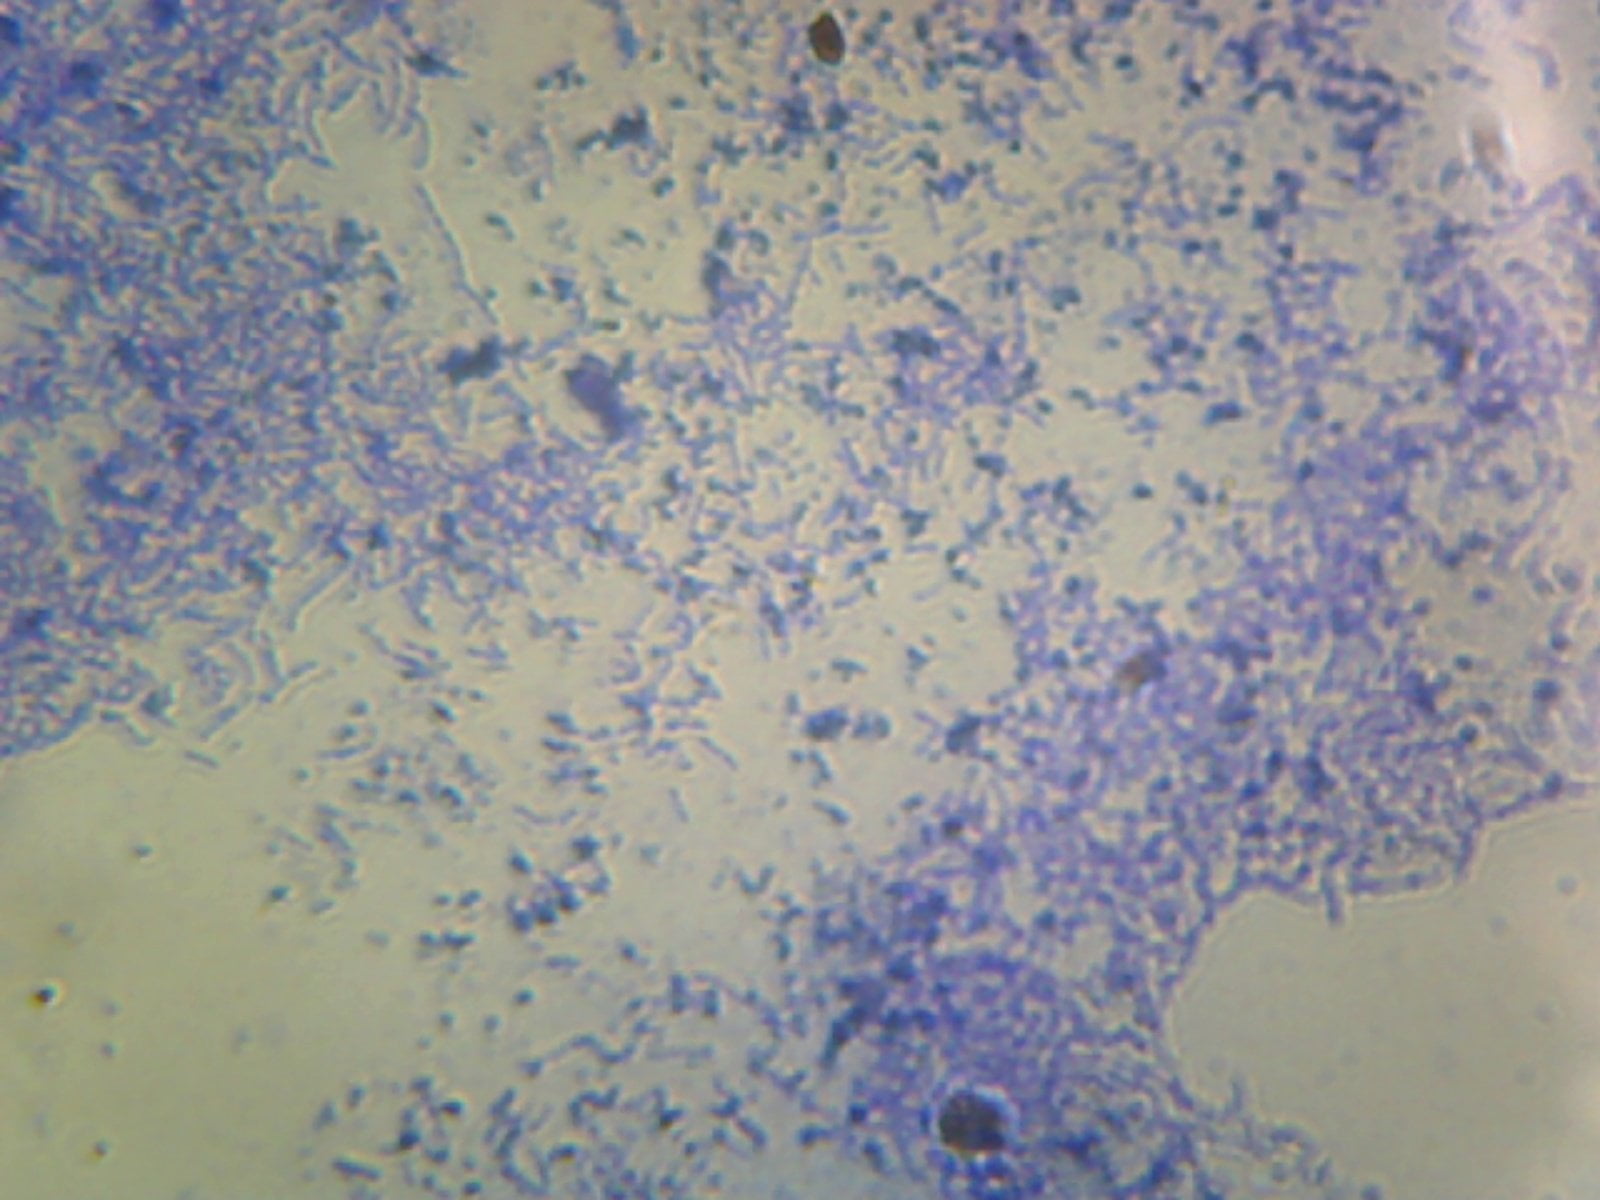 Лактобациллы фото под микроскопом